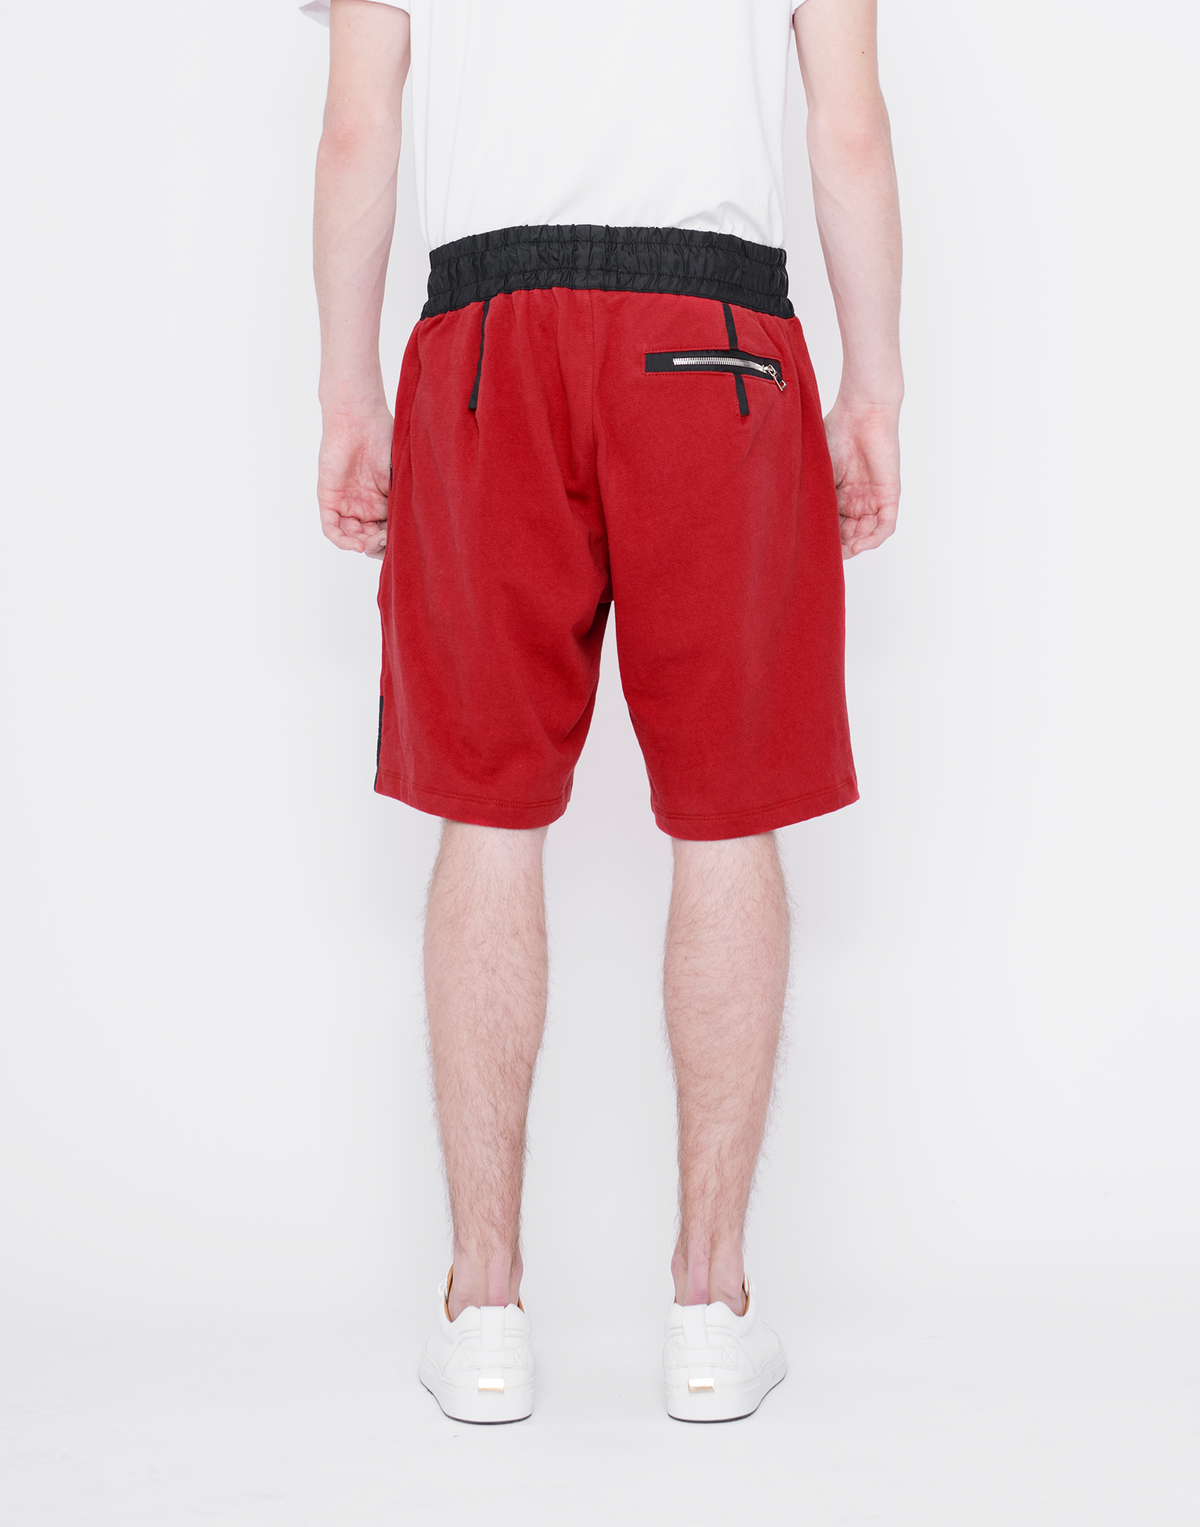 Mercer Shorts- RED